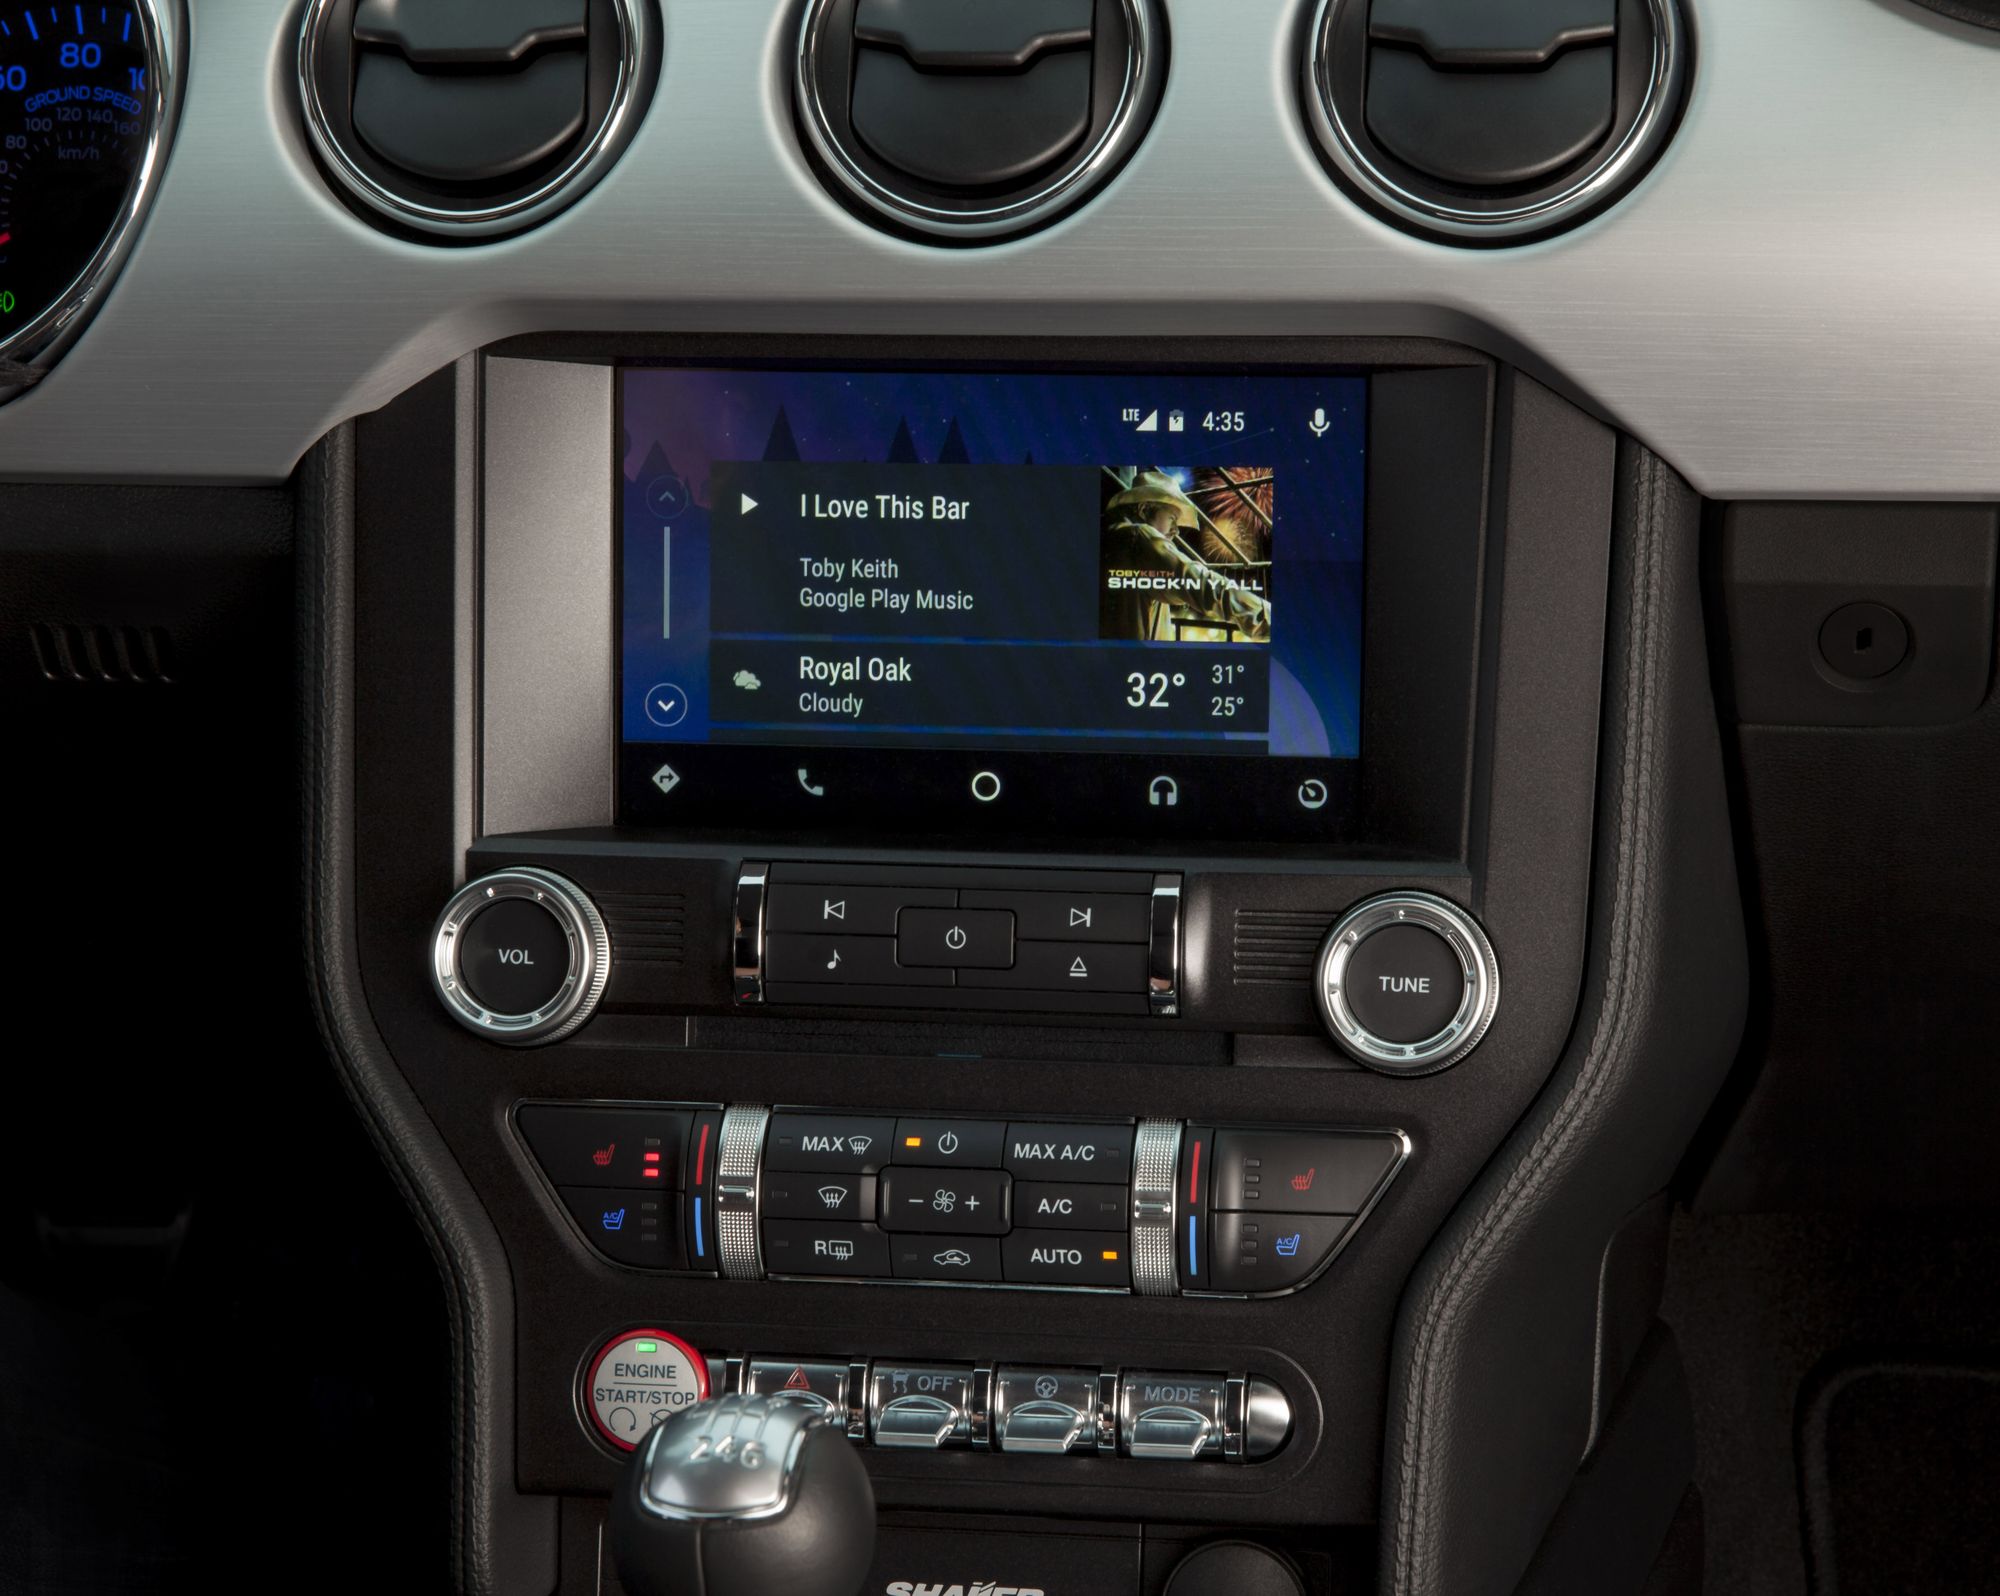 Toutes les voitures avec Android Auto et Apple CarPlay